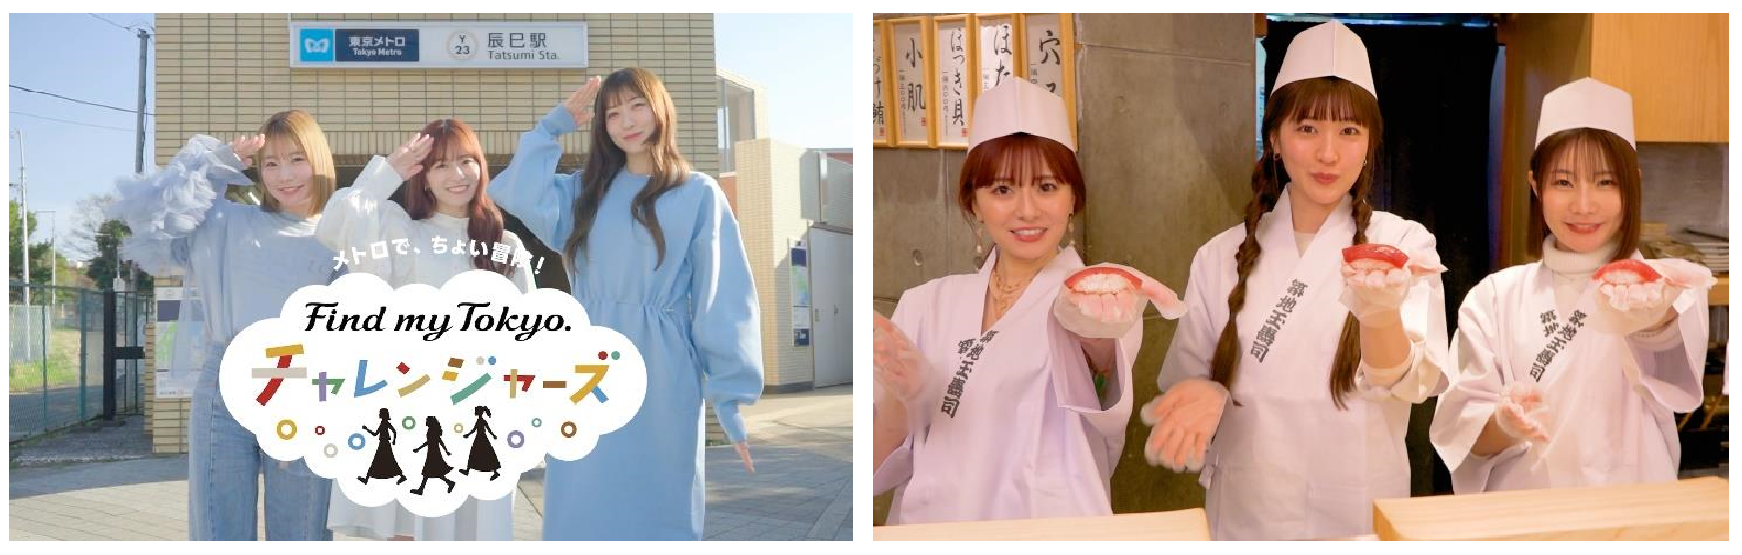 東京メトロ：４月26日(金)よりスペシャルムービーを公開　メトロで、ちょい冒険！「Find my Tokyo.チャレンジャーズ」